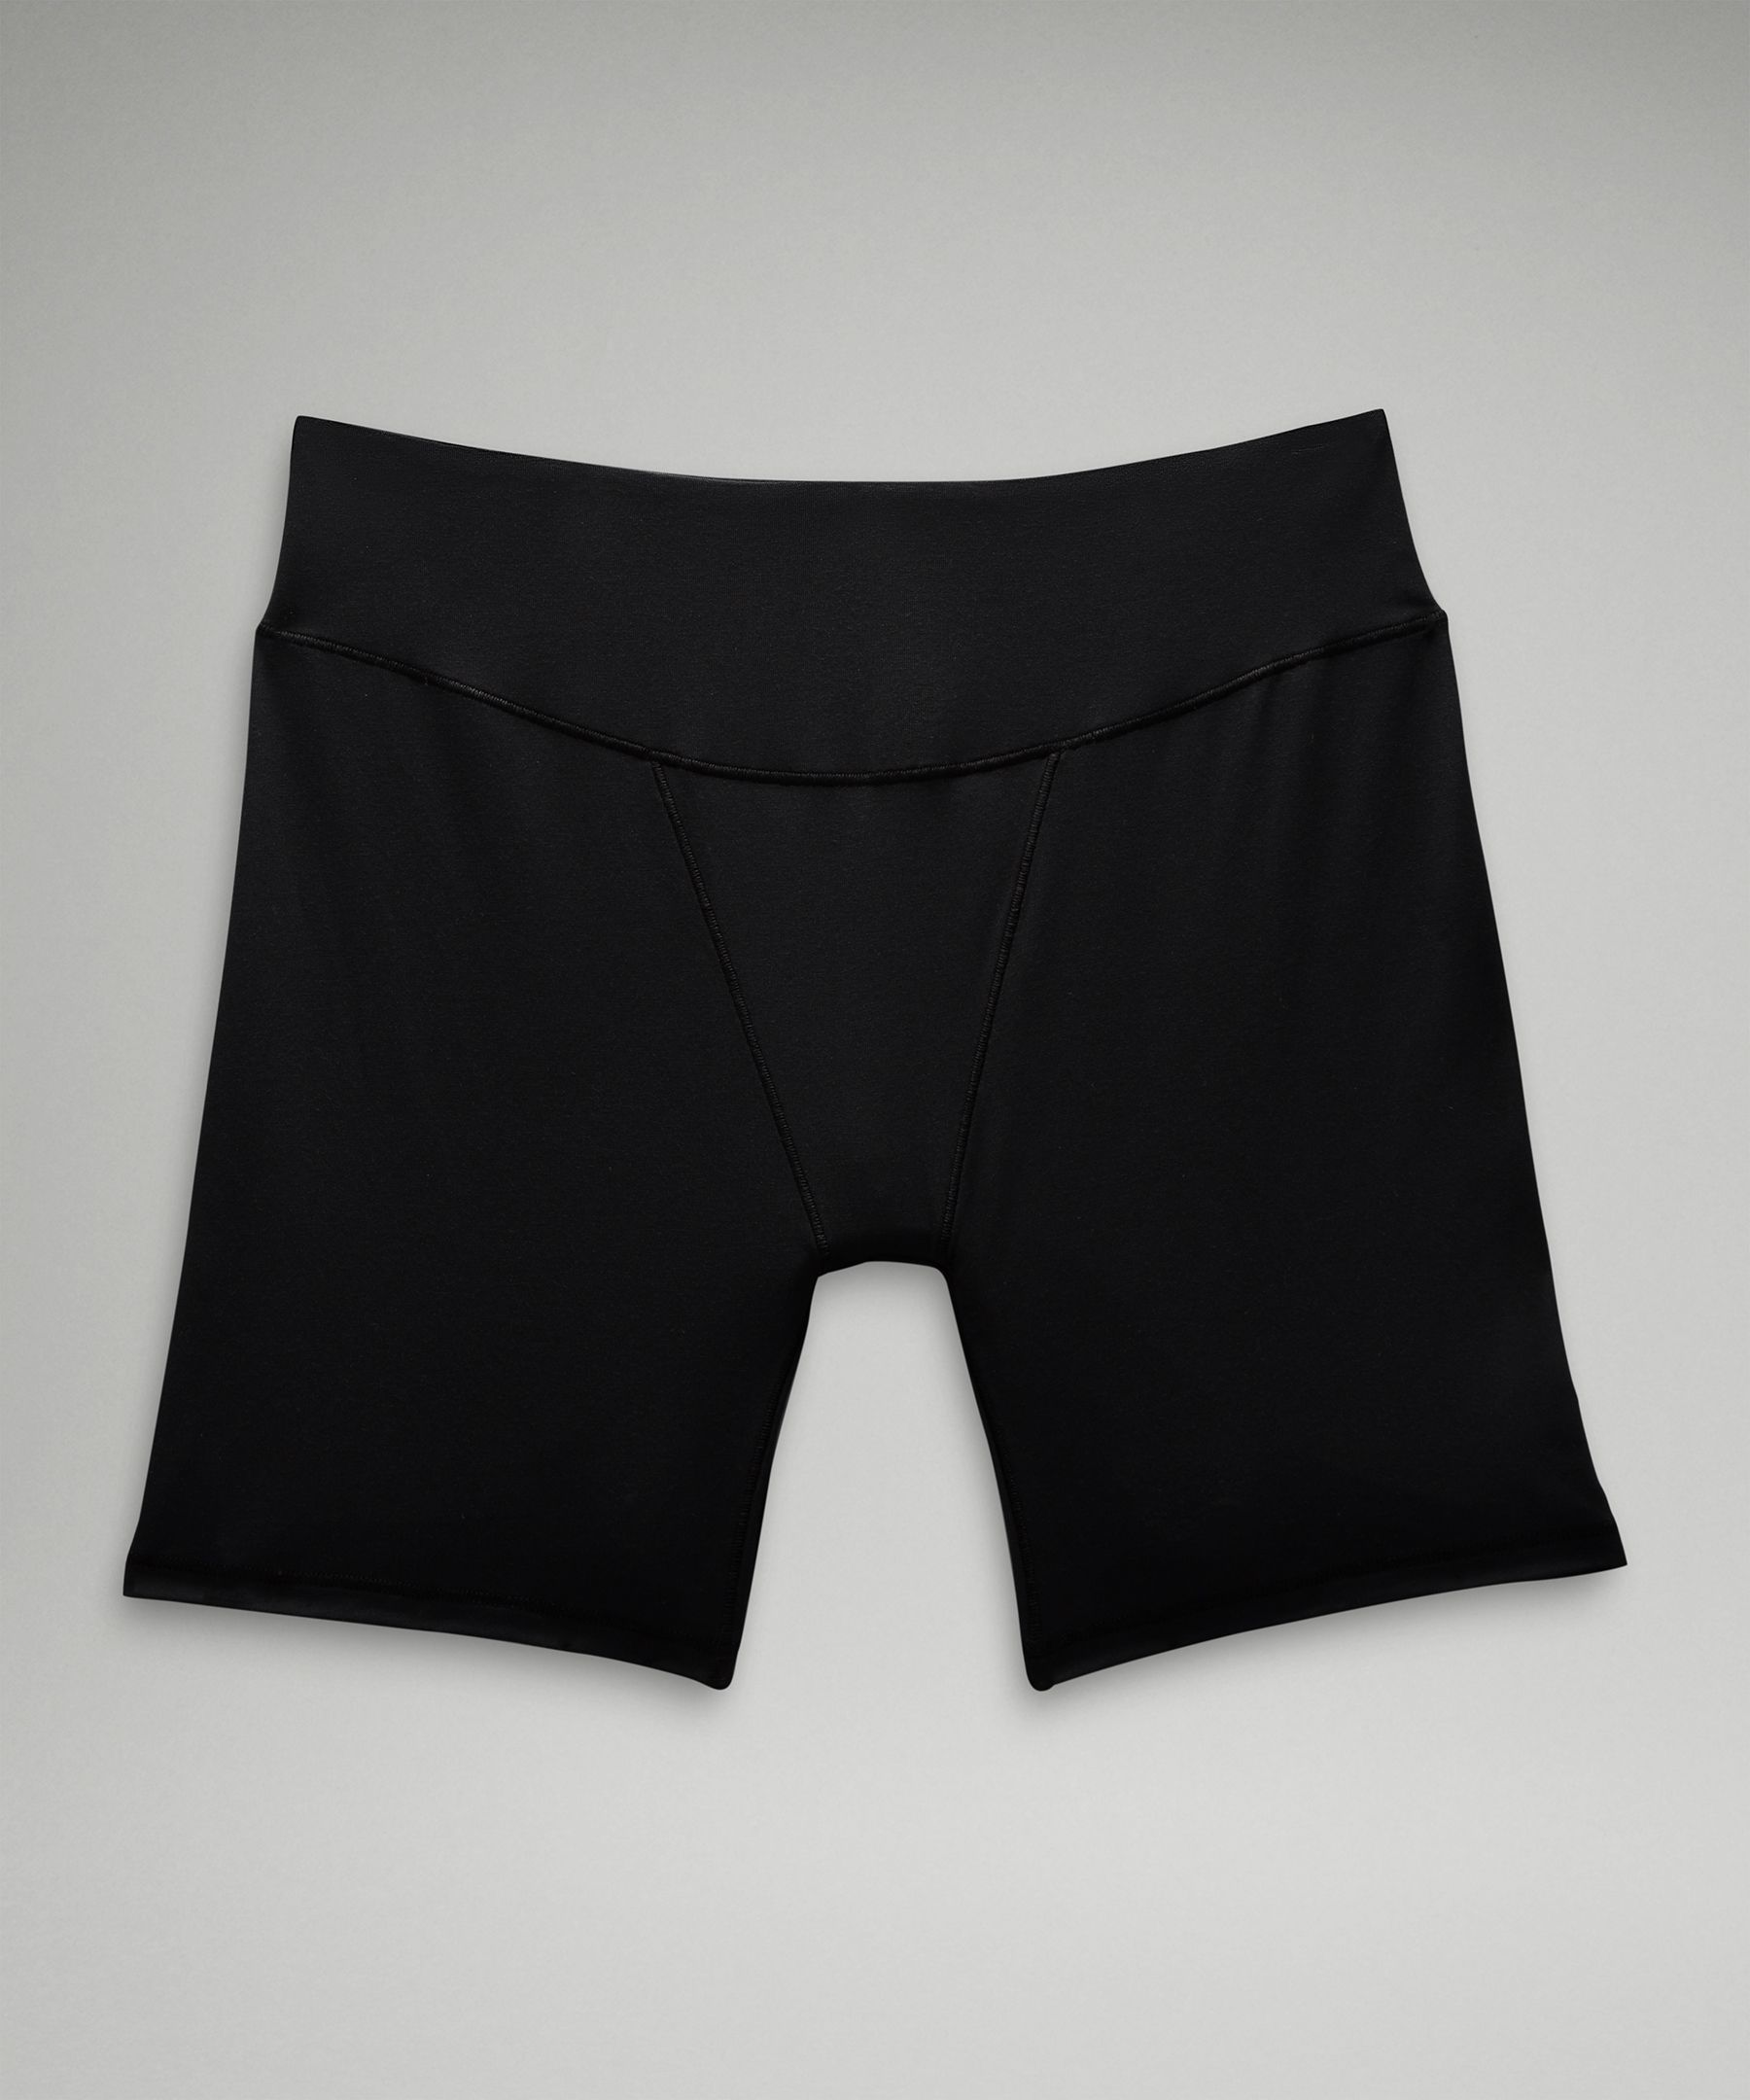 Lululemon athletica UnderEase Super-High-Rise Shortie Underwear *2 Pack, Women's